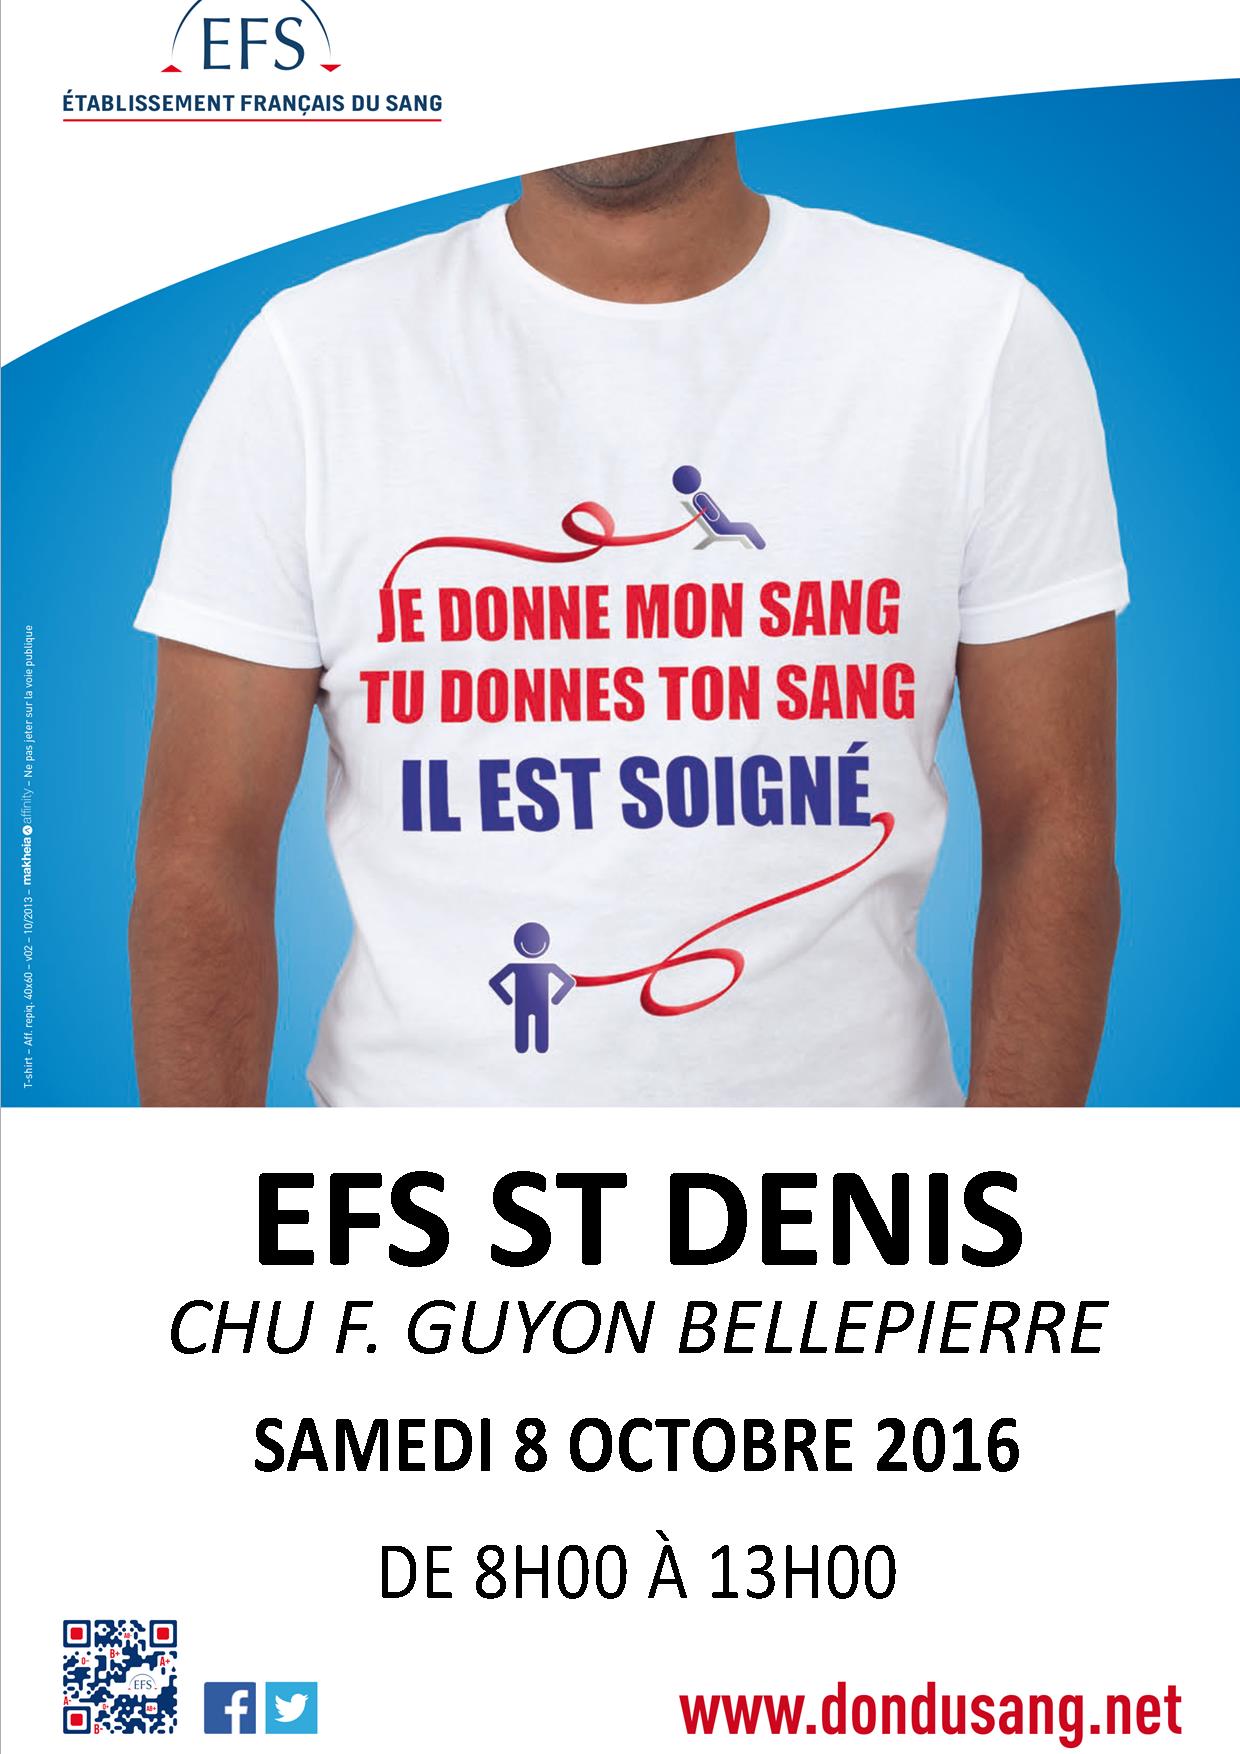 Don du sang au CHU F. Guyon Bellepierre le samedi 8 octobre 2016